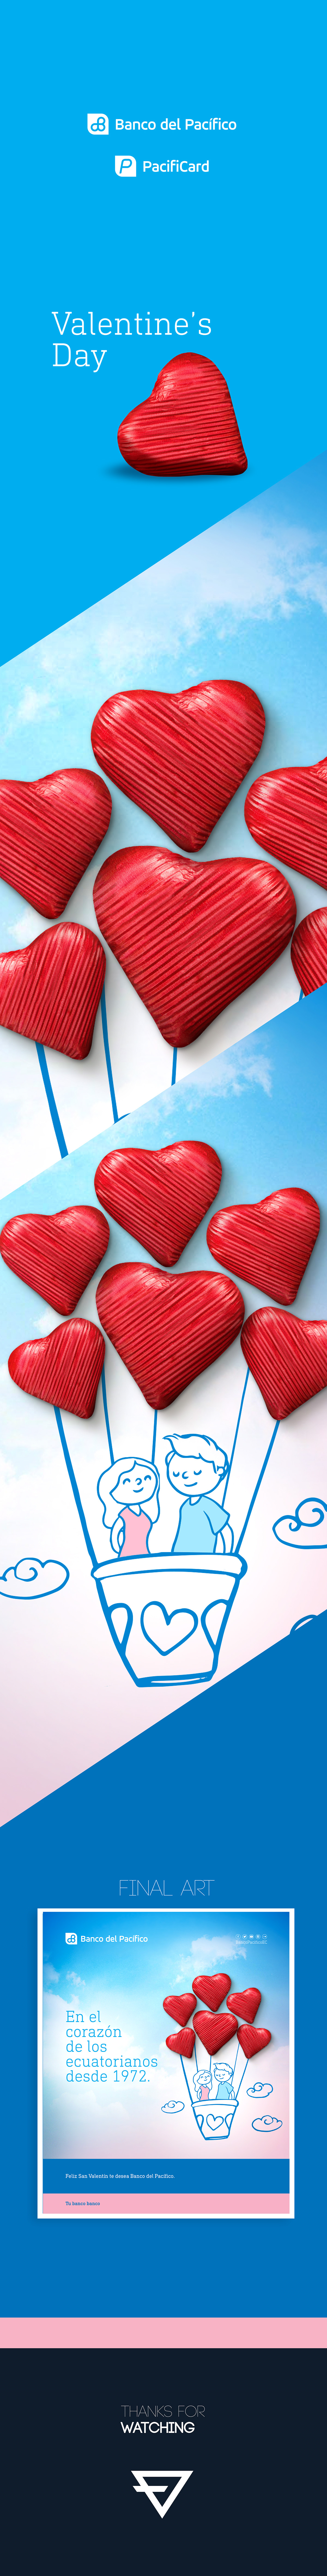 Valentine's Day Banco del Pacifico banco Love heart doodle